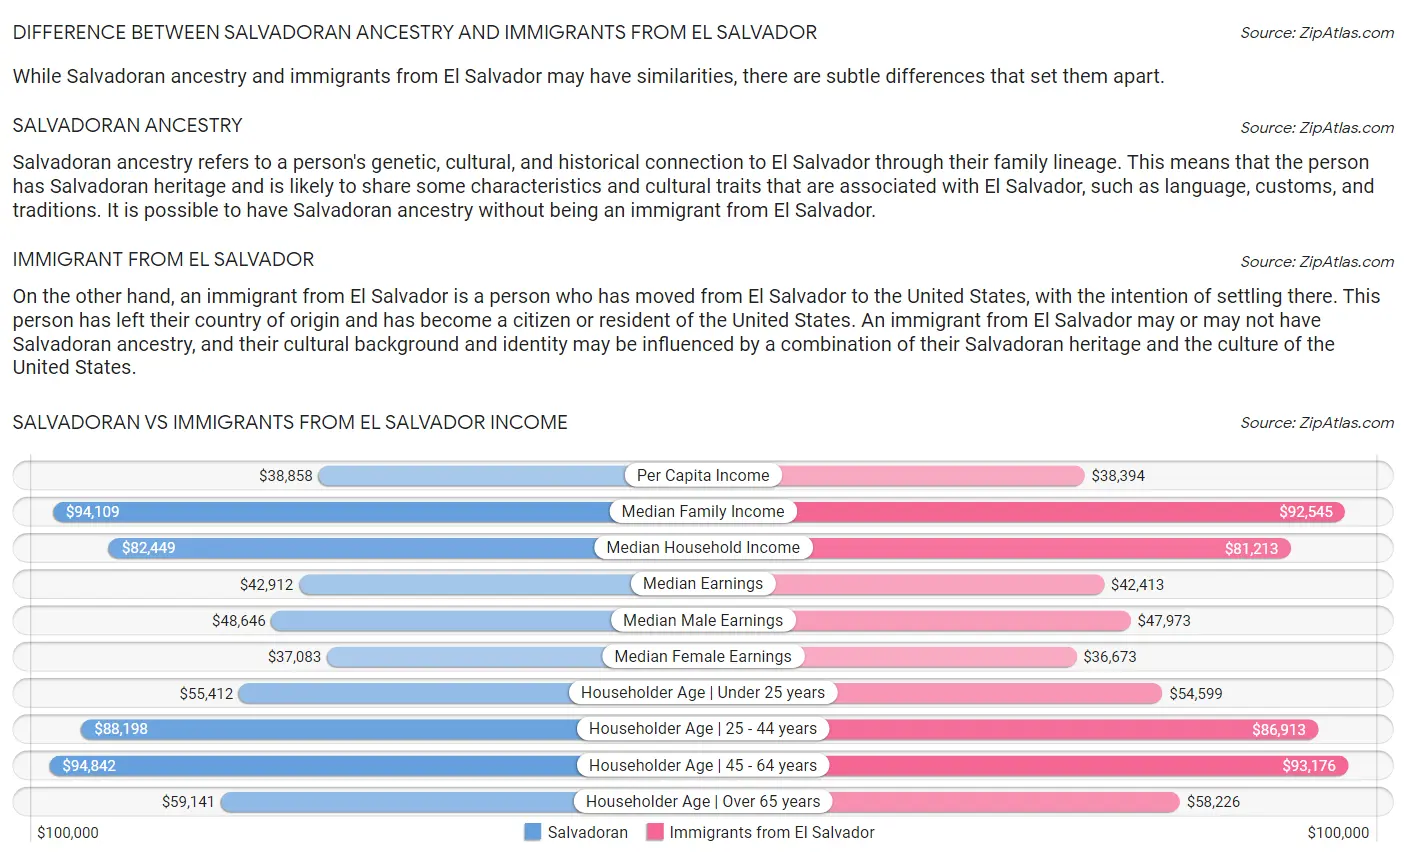 Salvadoran vs Immigrants from El Salvador Income